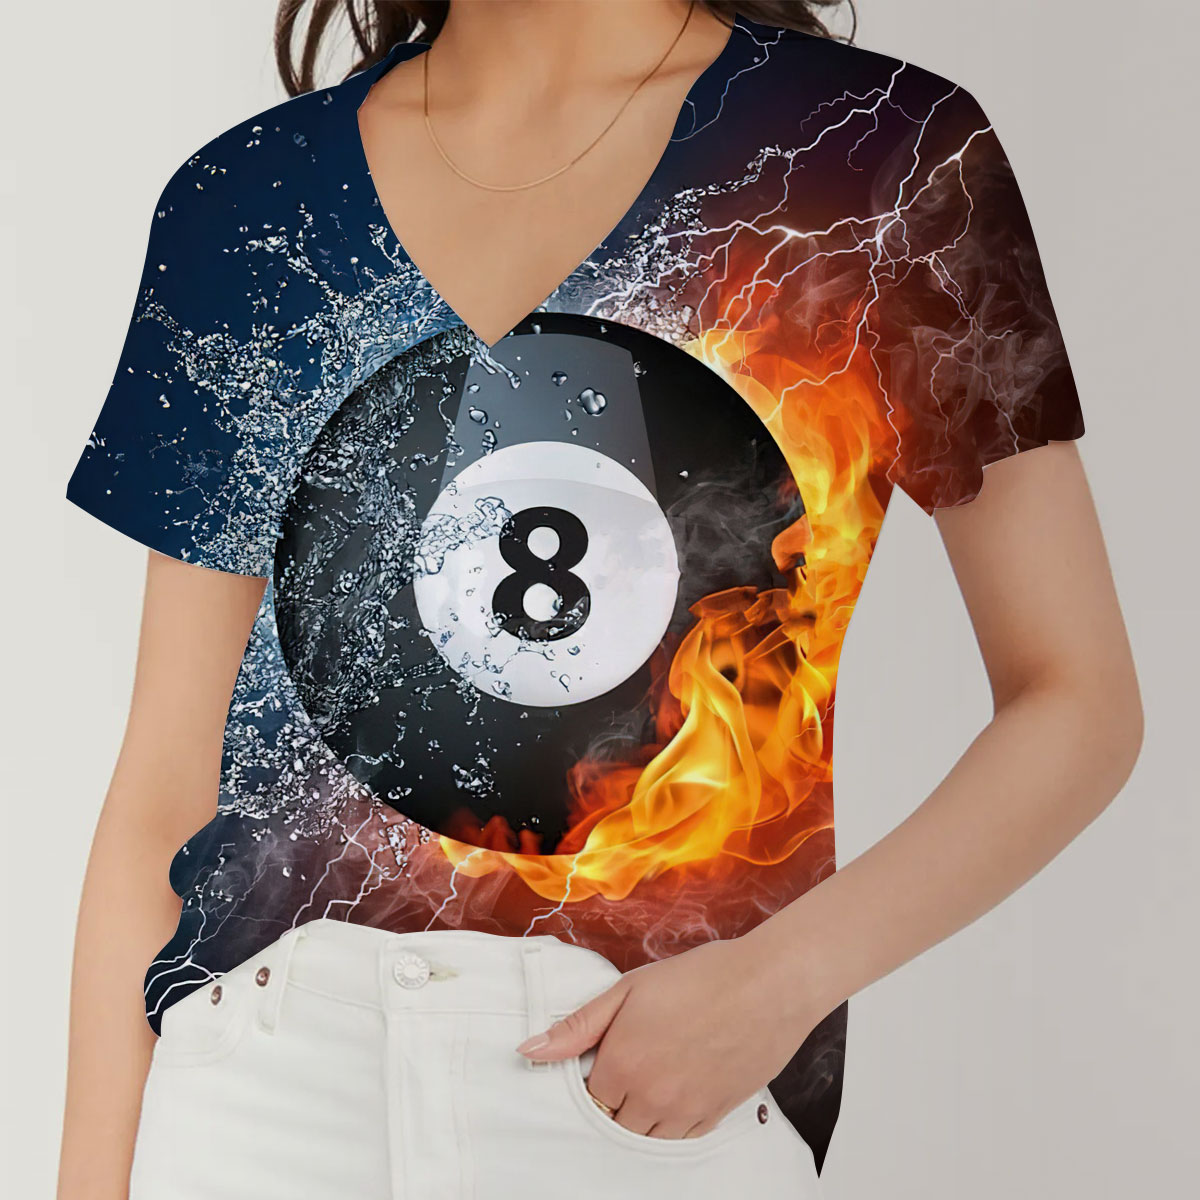 Fire _ Water Billiard V-Neck Women's T-Shirt_1_2.1